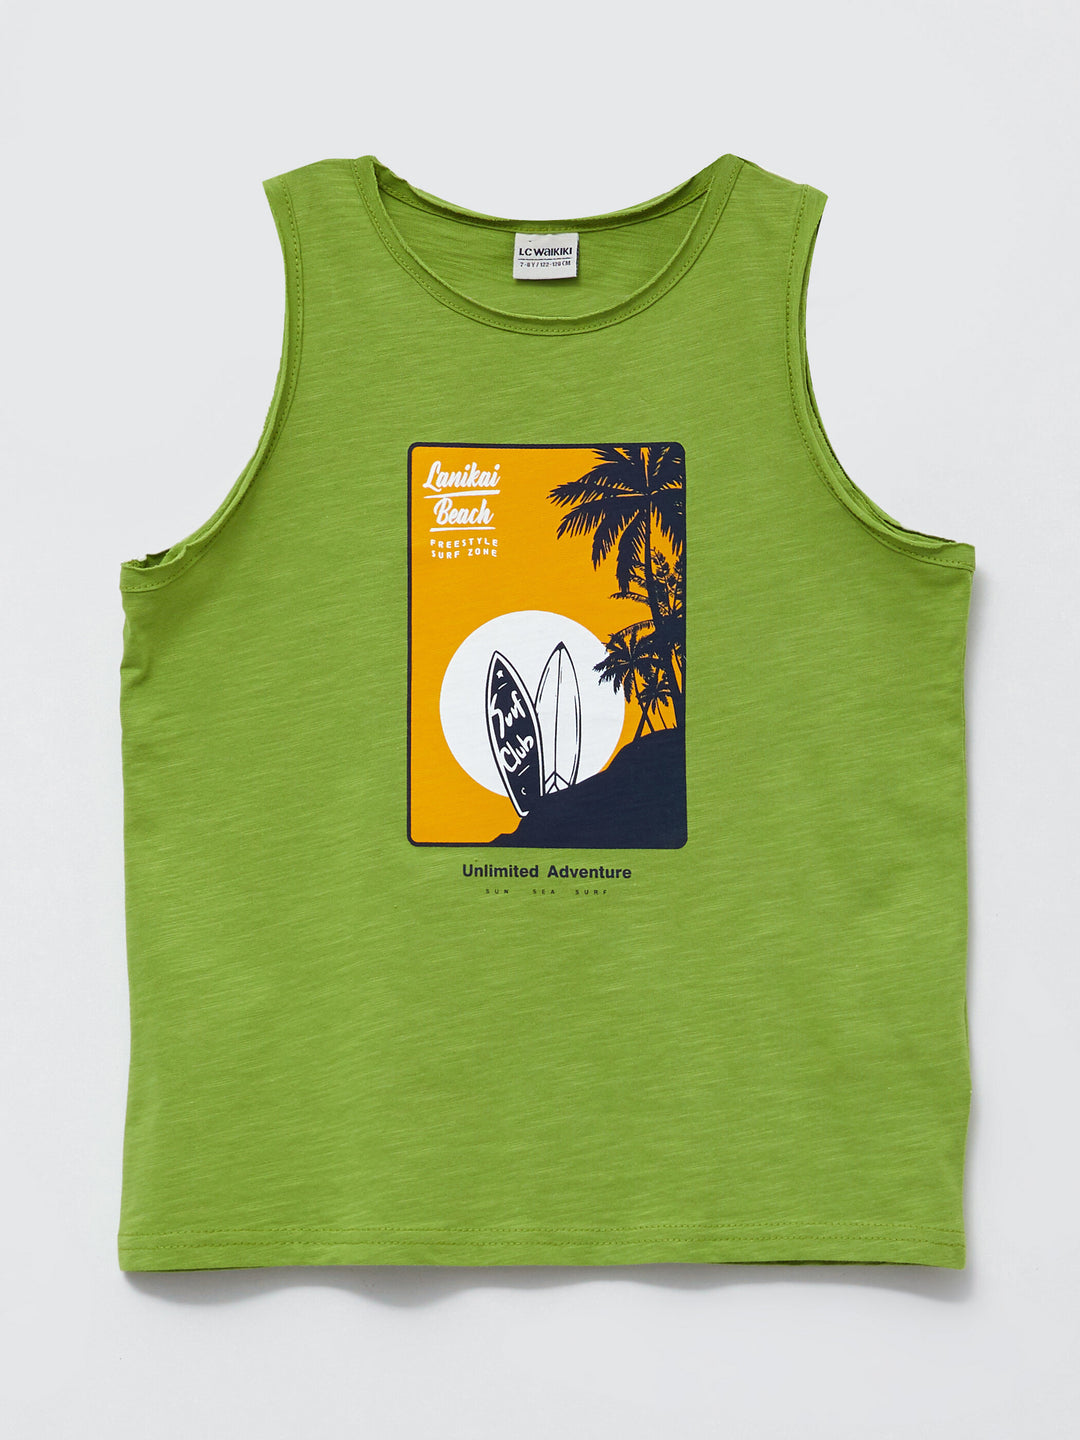 T-Shirt Sleeveless LC Waikiki, Moudda Tunisie S29071Z4